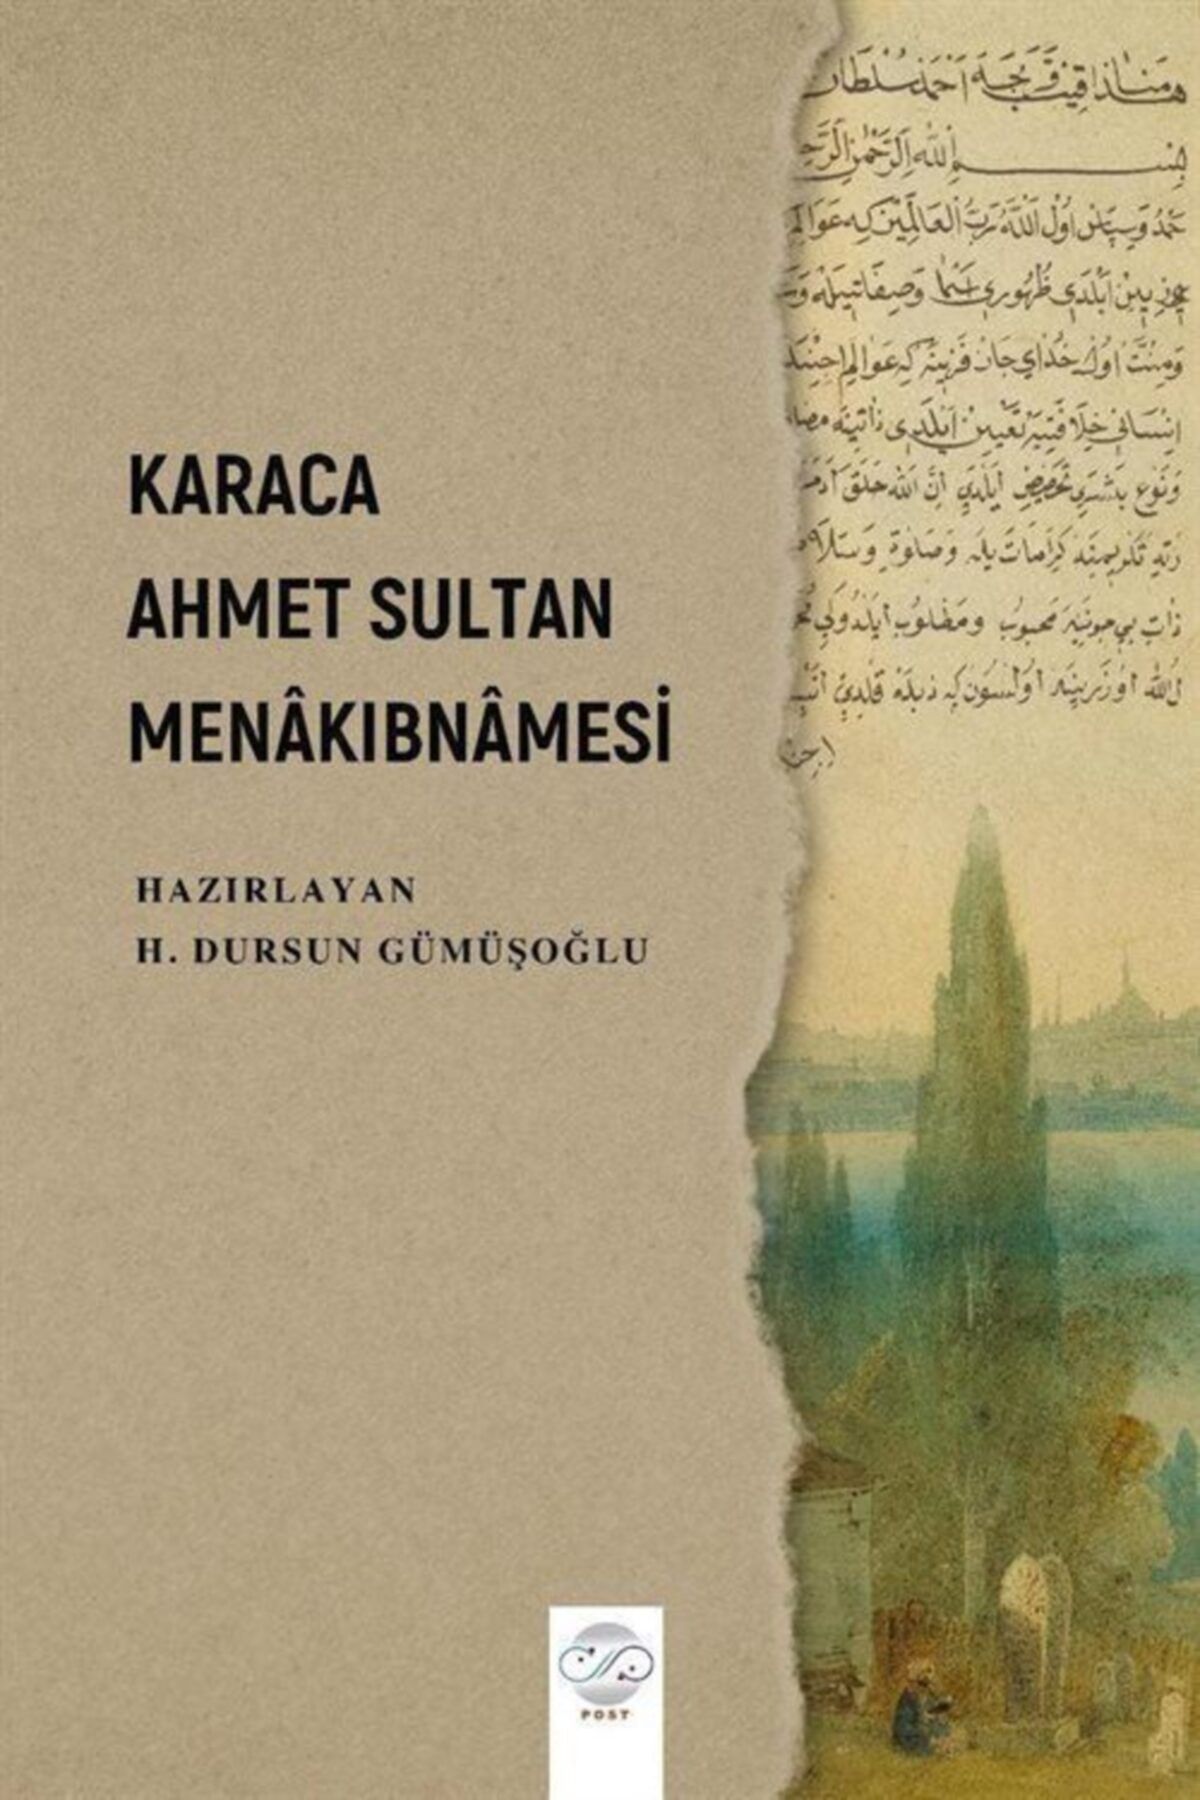 Post Yayın Karaca Ahmet Sultan Menakıbnamesi